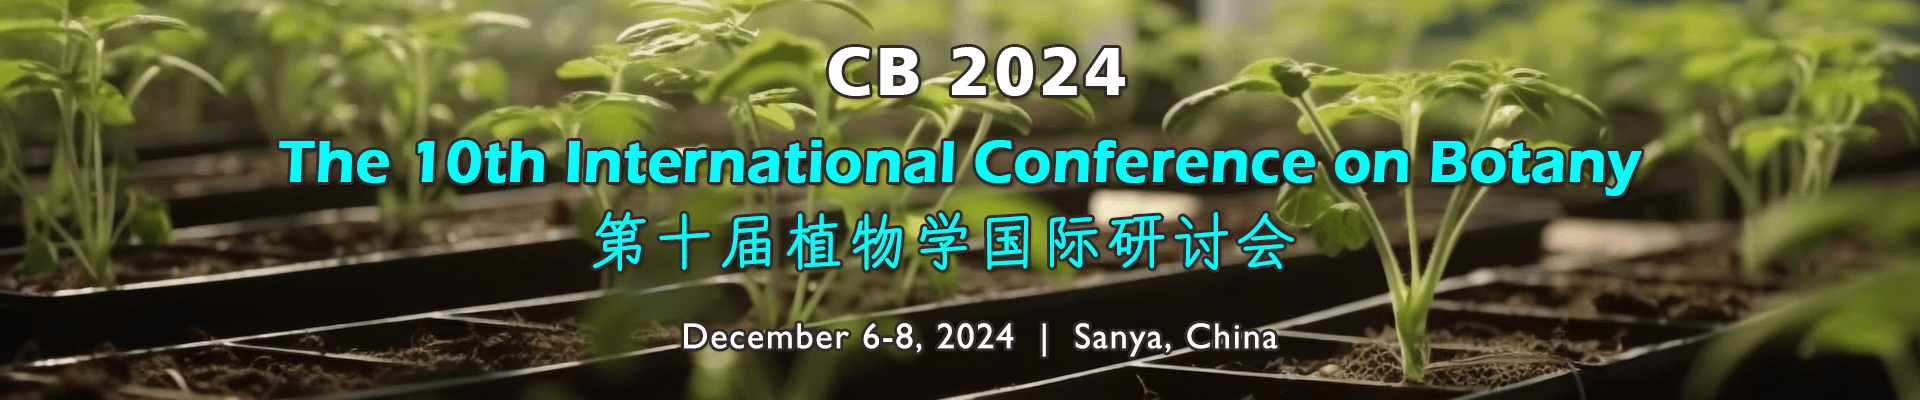 The 10th International Conference on Botany (CB 2024), Sanya, Hainan, China